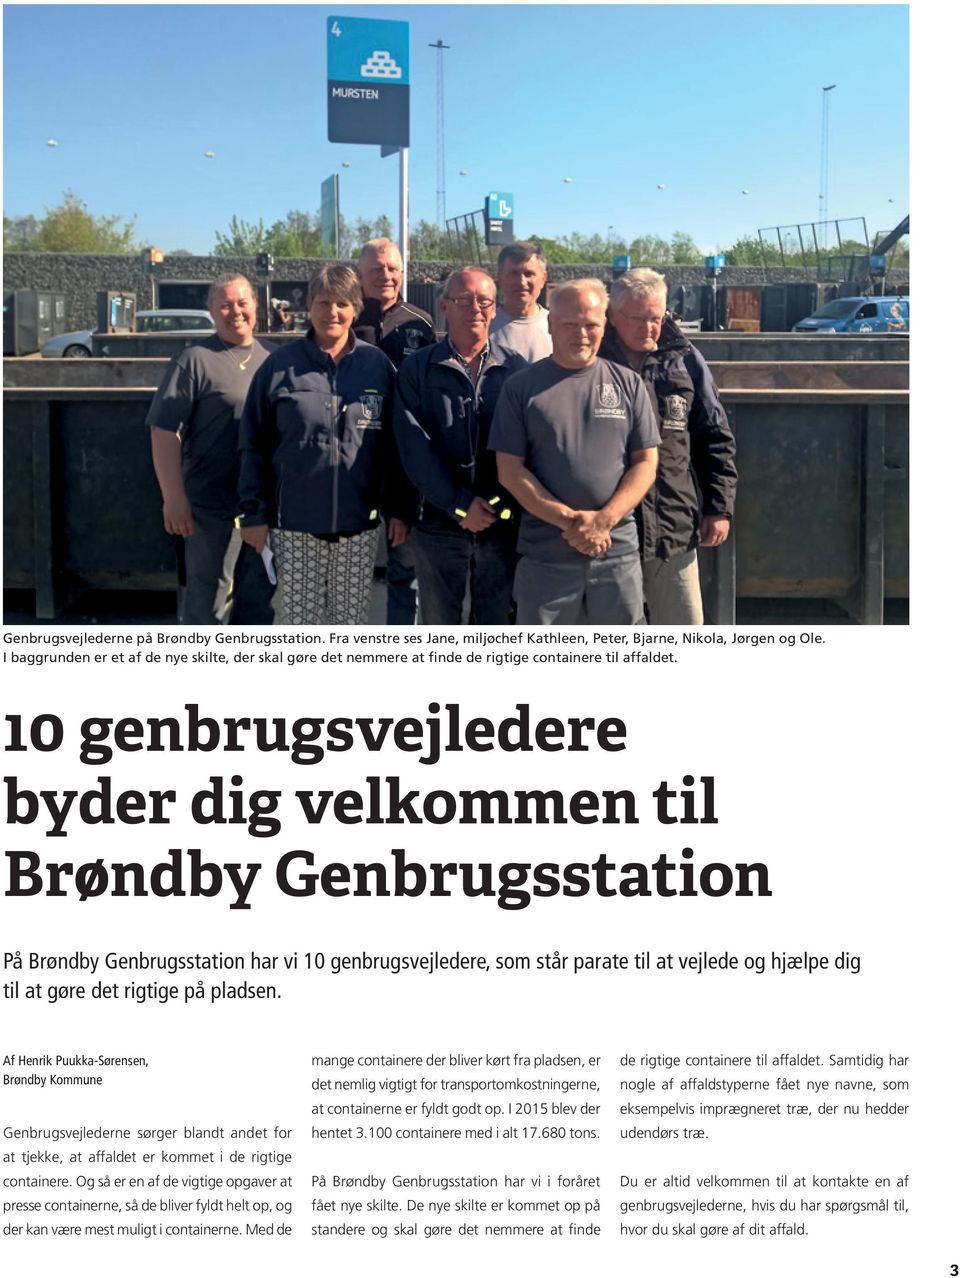 10 genbrugsvejledere byder dig velkommen til Brøndby Genbrugsstation På Brøndby Genbrugsstation har vi 10 genbrugsvejledere, som står parate til at vejlede og hjælpe dig til at gøre det rigtige på